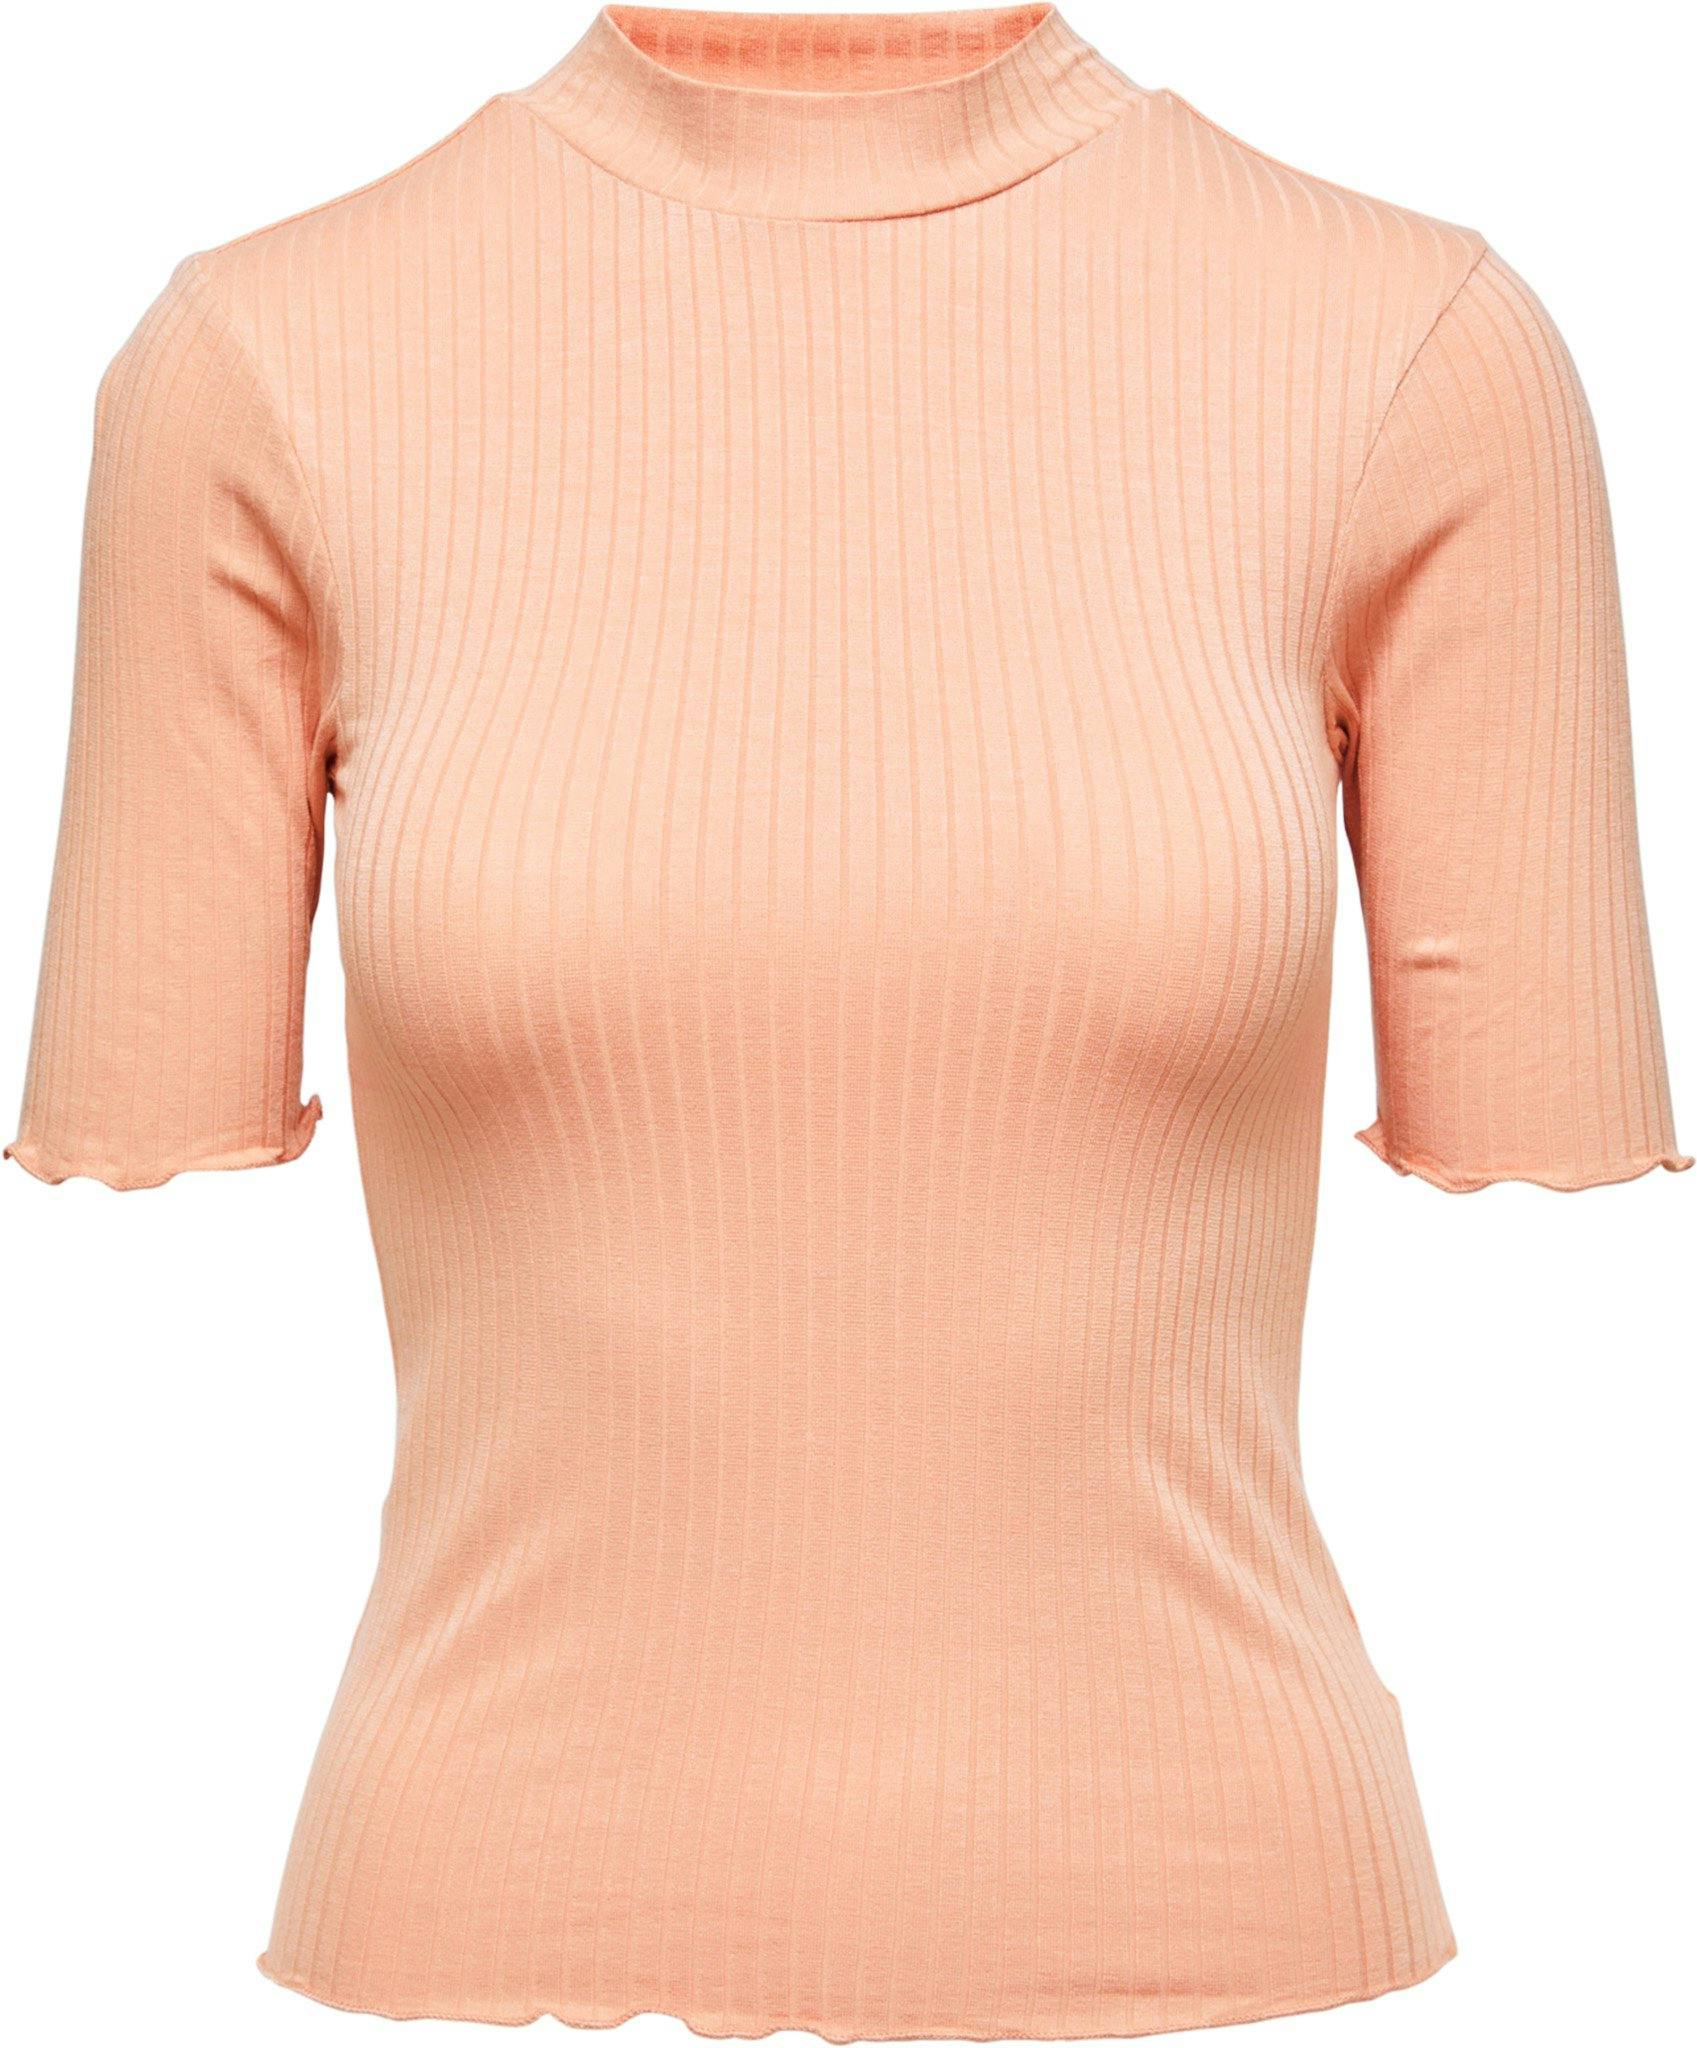 Numéro de l'image de la galerie de produits 1 pour le produit T-shirt en tricot à manches courtes et col cheminée Good Vibes - Femme